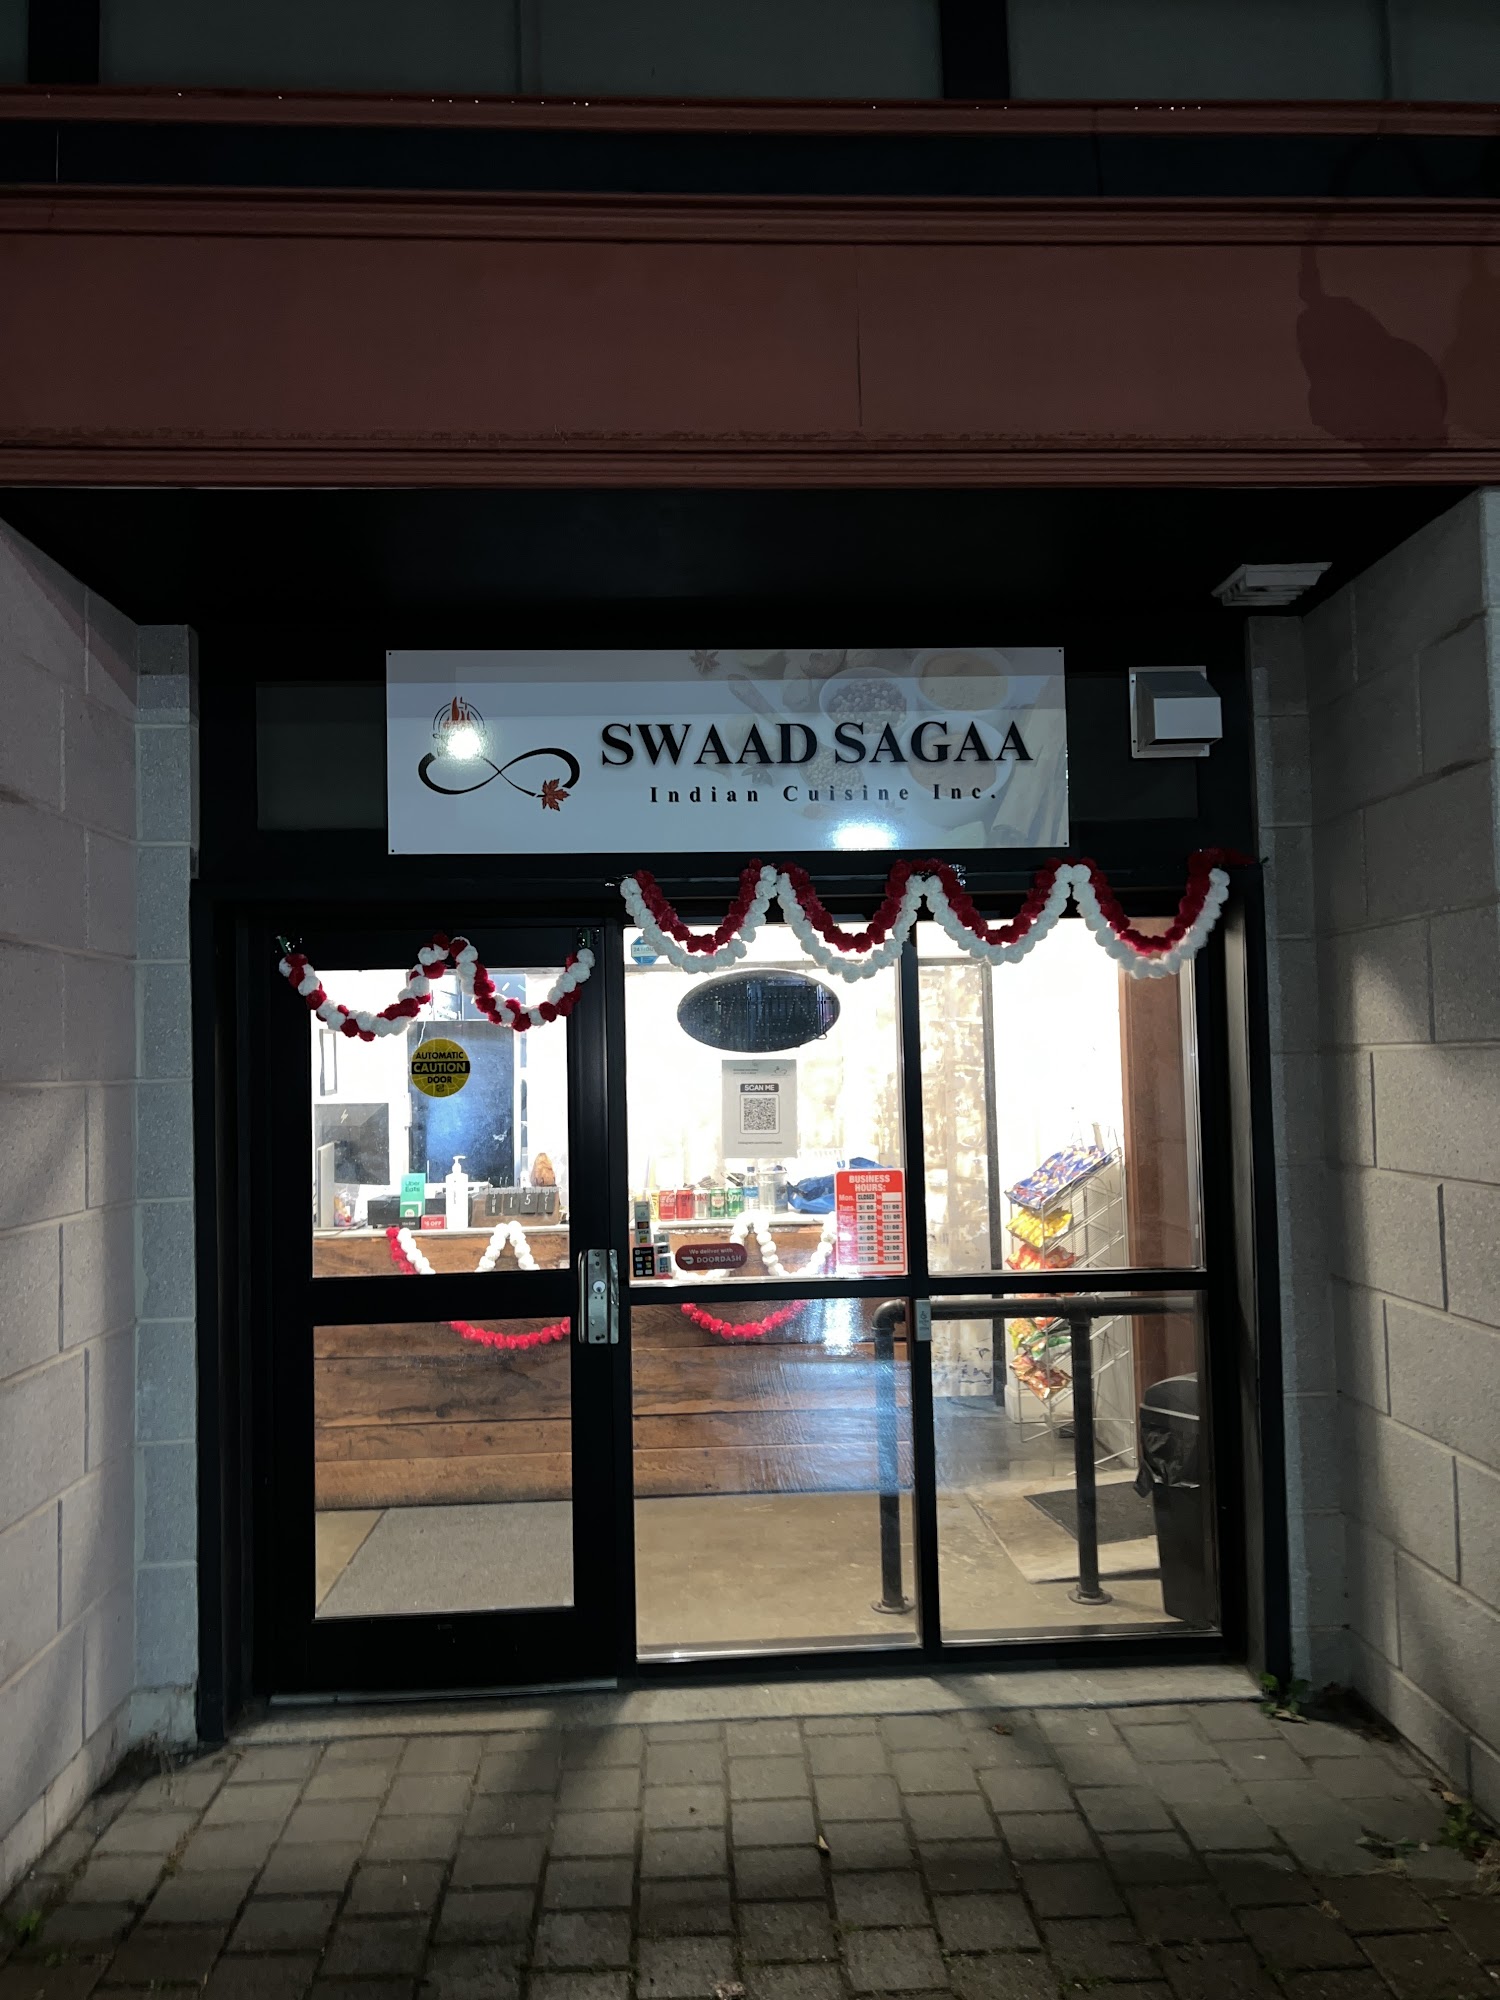 Swaad Sagaa Indian Cuisine Inc. 5710 Young St, Halifax, NS B3K 1Z8